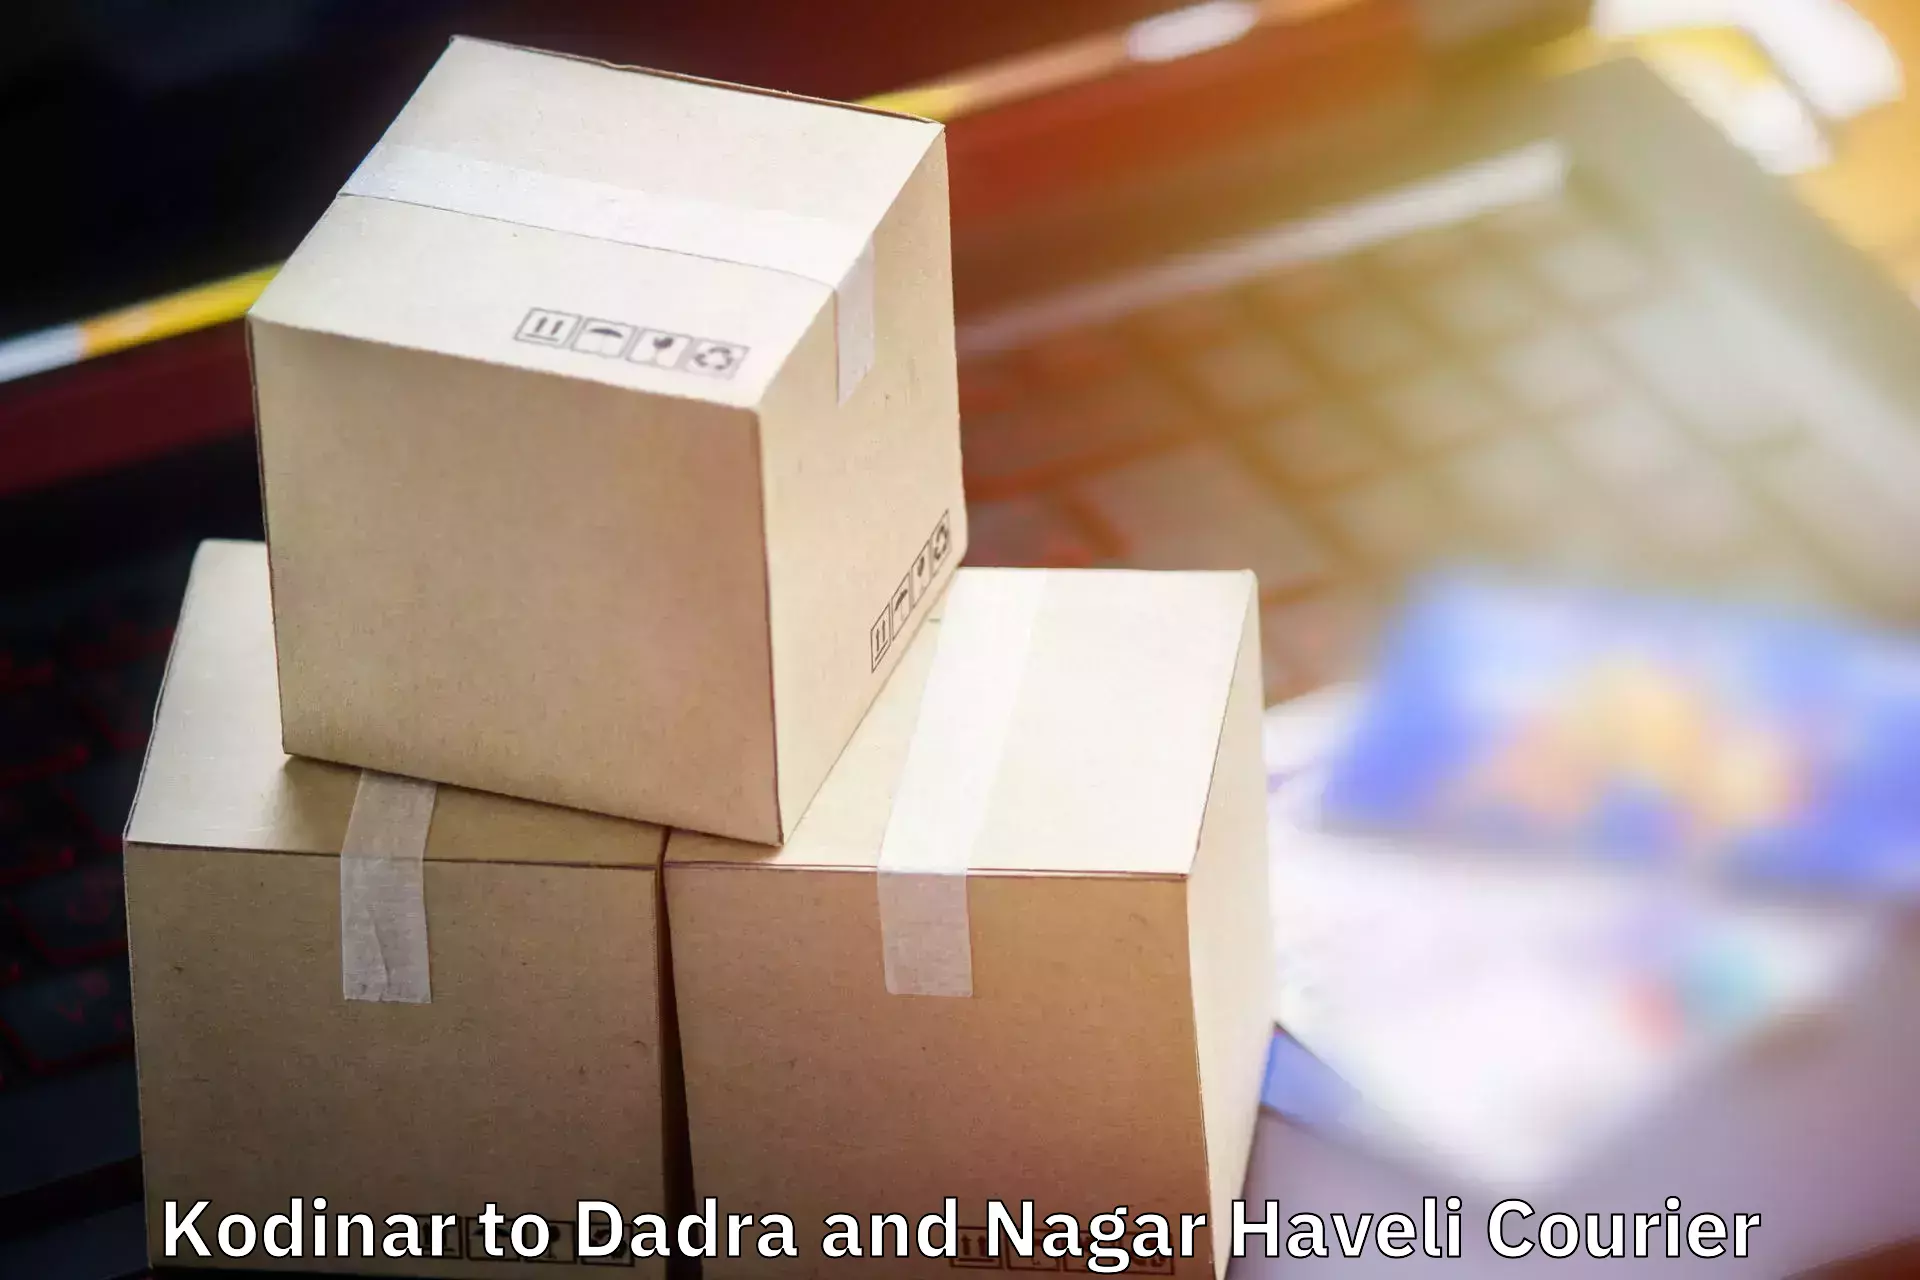 Digital baggage courier Kodinar to Dadra and Nagar Haveli